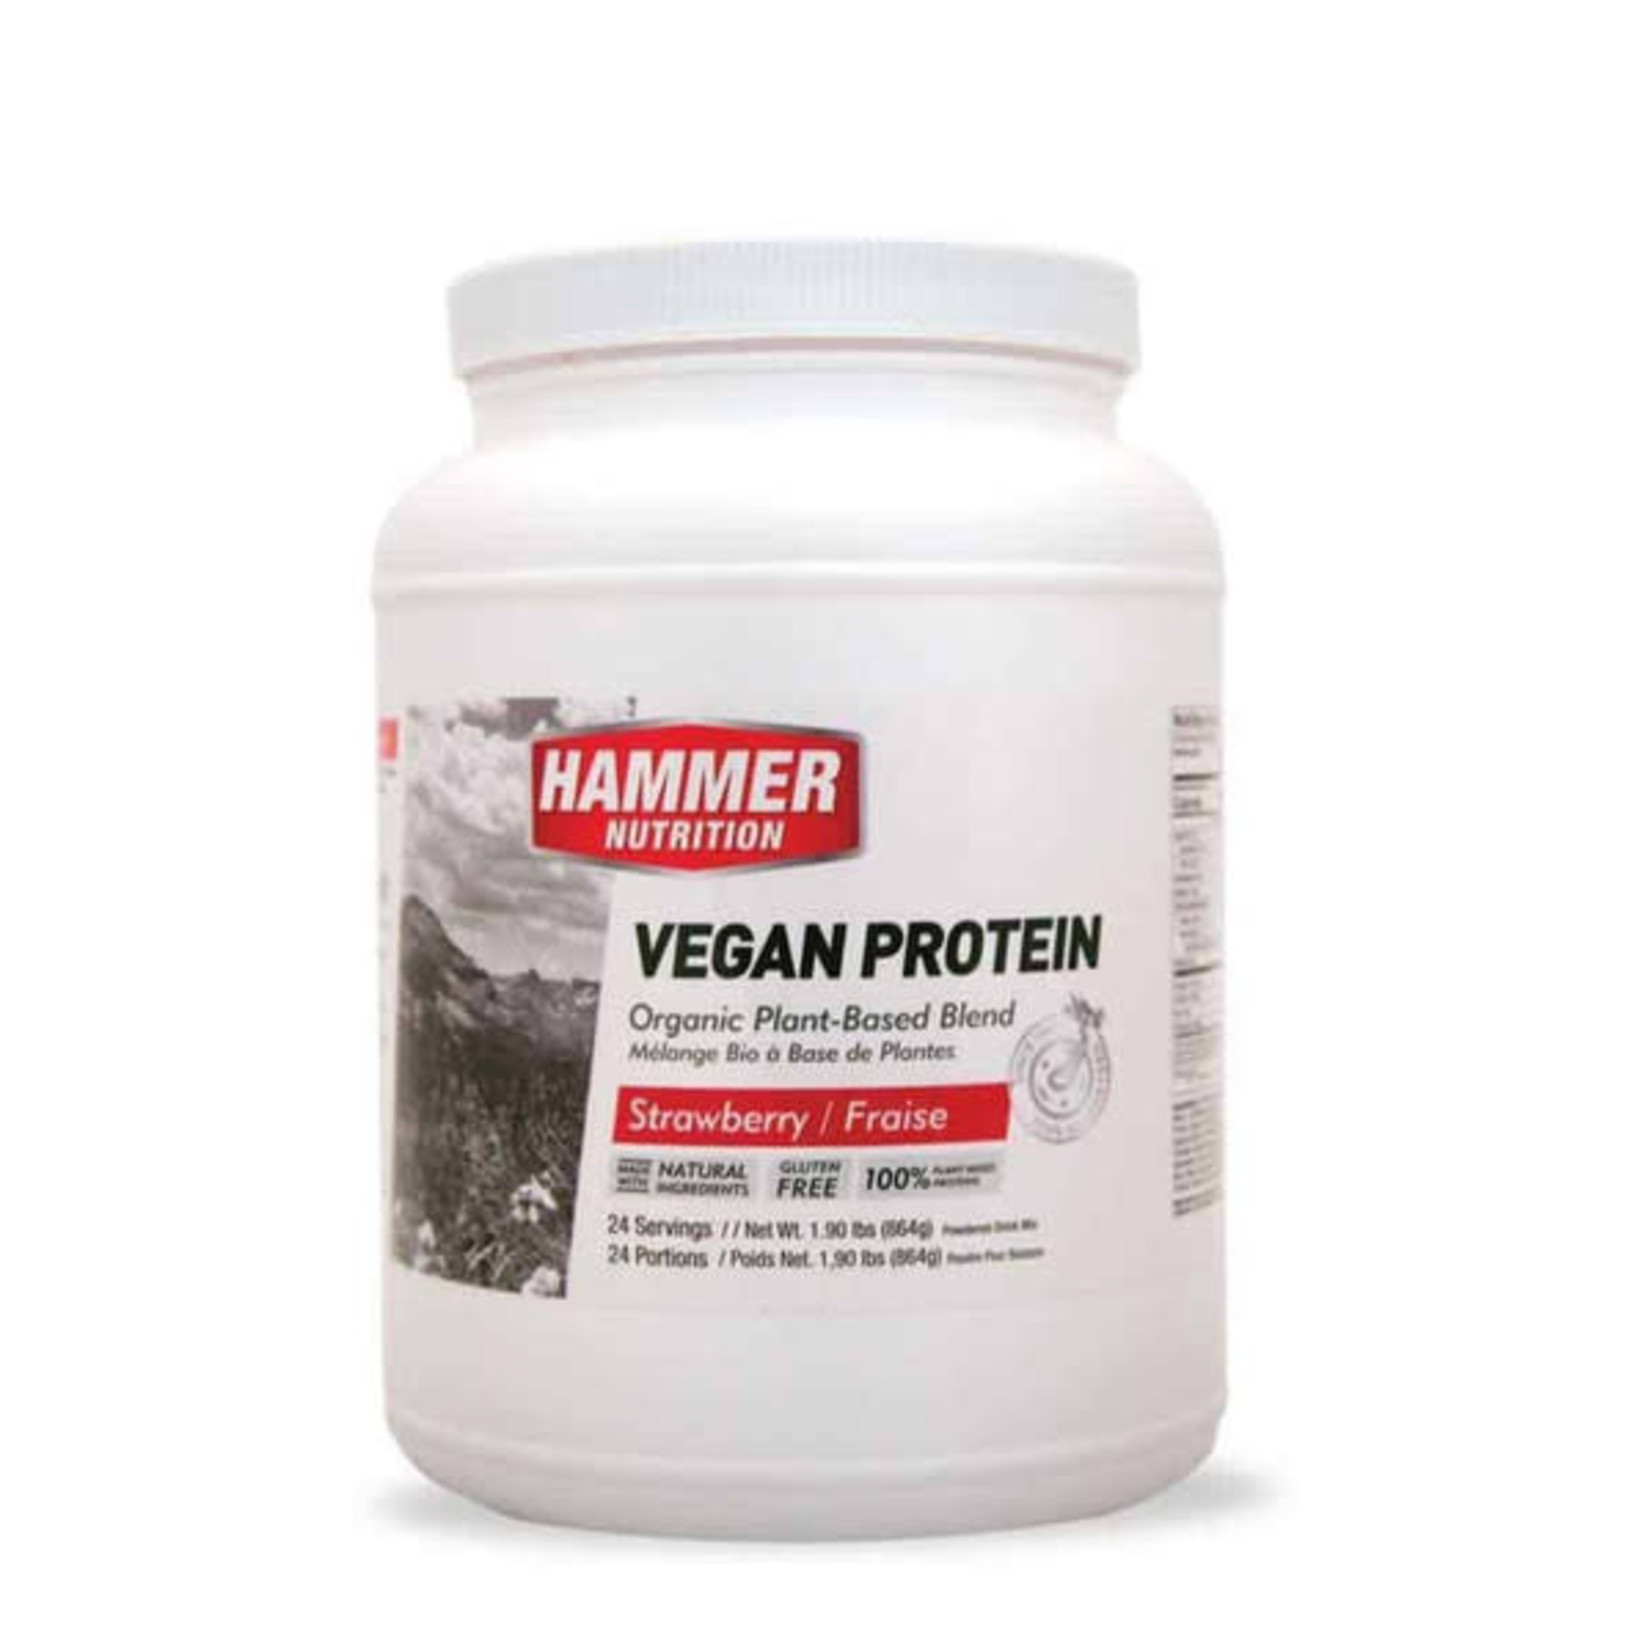 Hammer Nutrition Hammer Vegan Protein Powder 24 servings